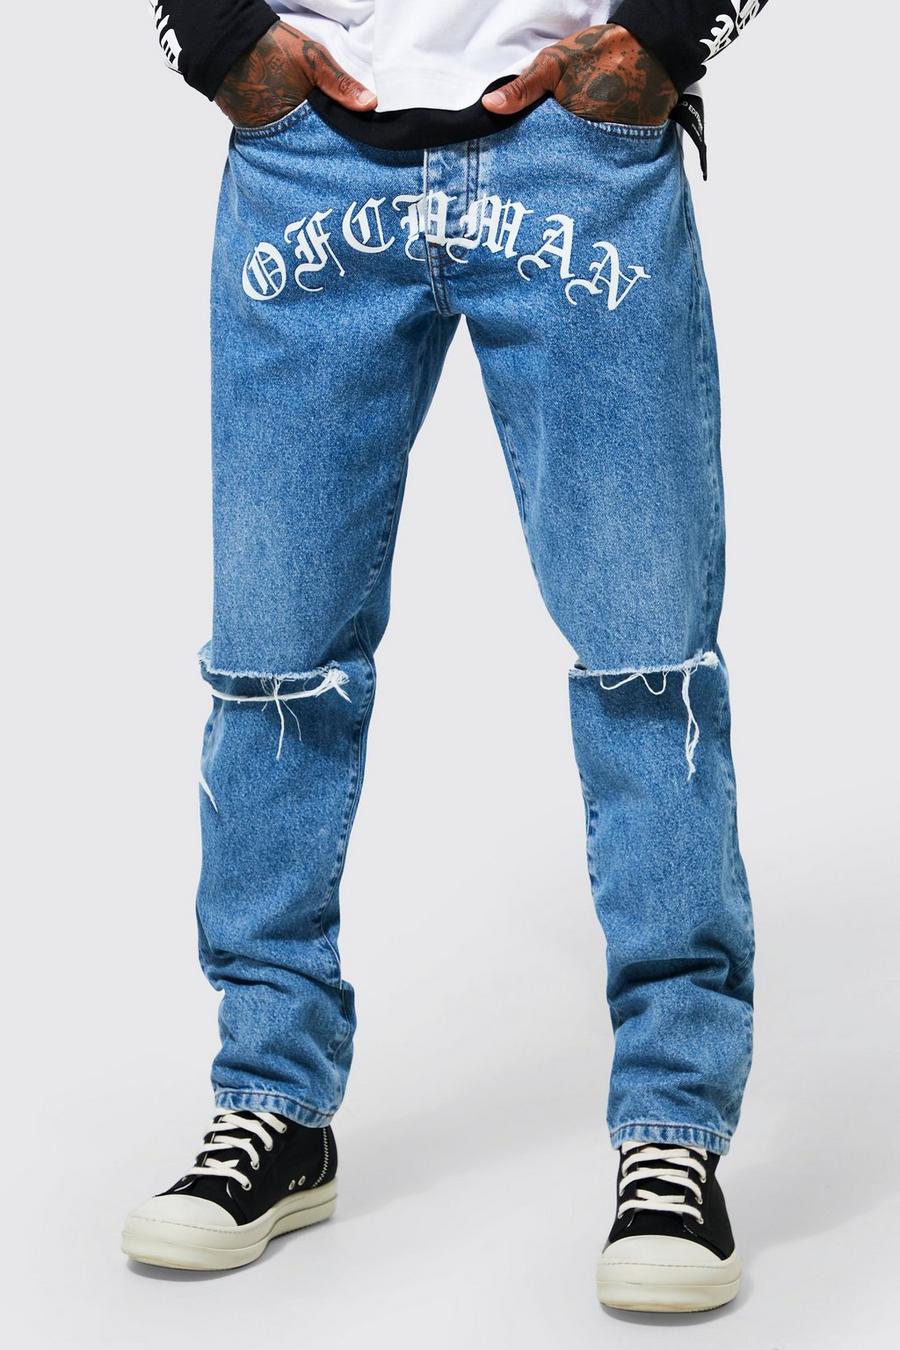 כחול בהיר azul ג'ינס בגזרת רגל ישרה עם הדפס Ofcl Man